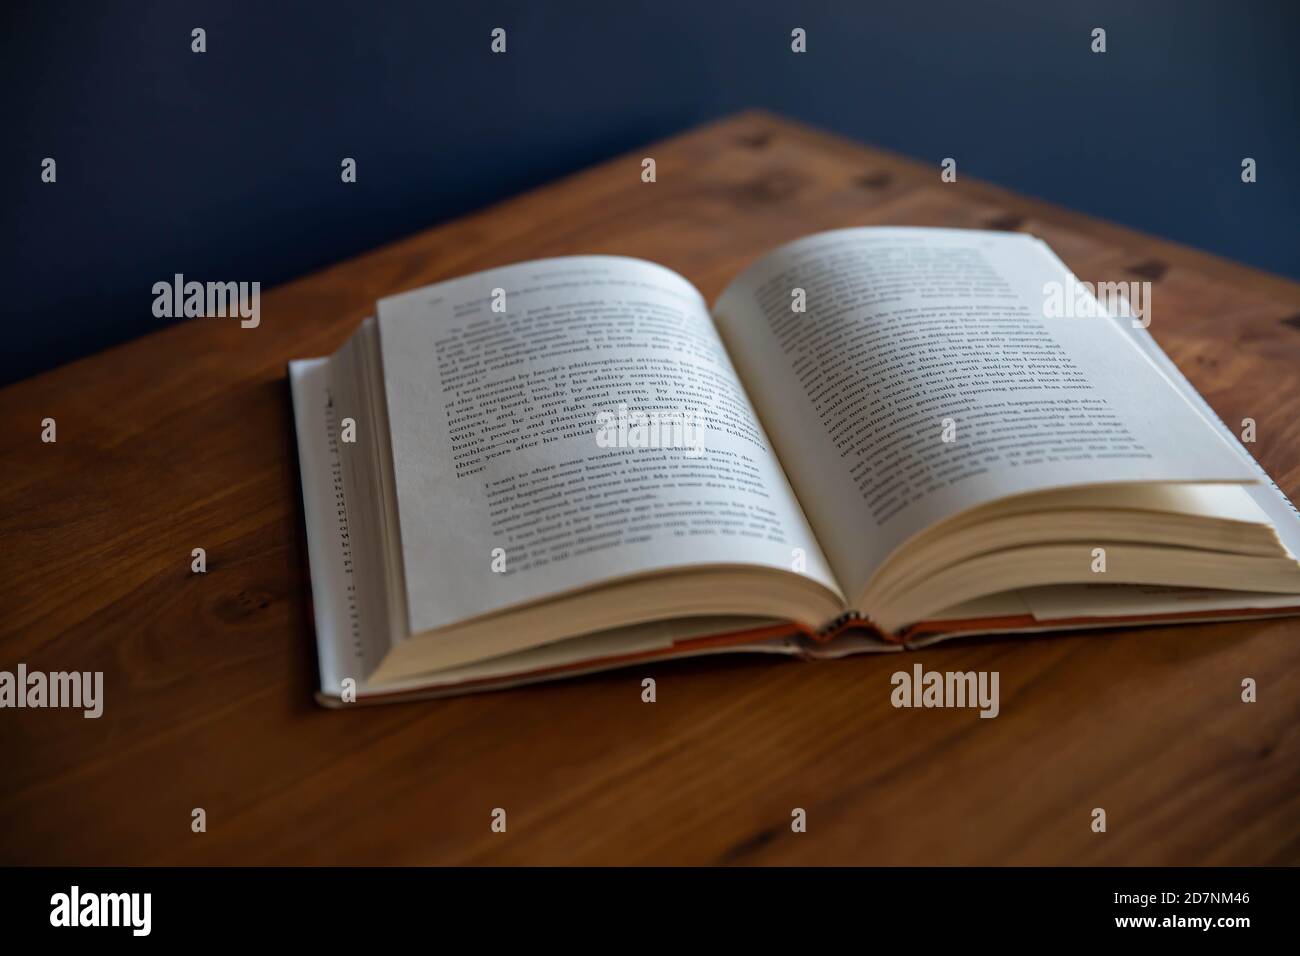 Offenes Buch auf einem Kirschholzschrank mit marineblauen Wänden Stockfoto